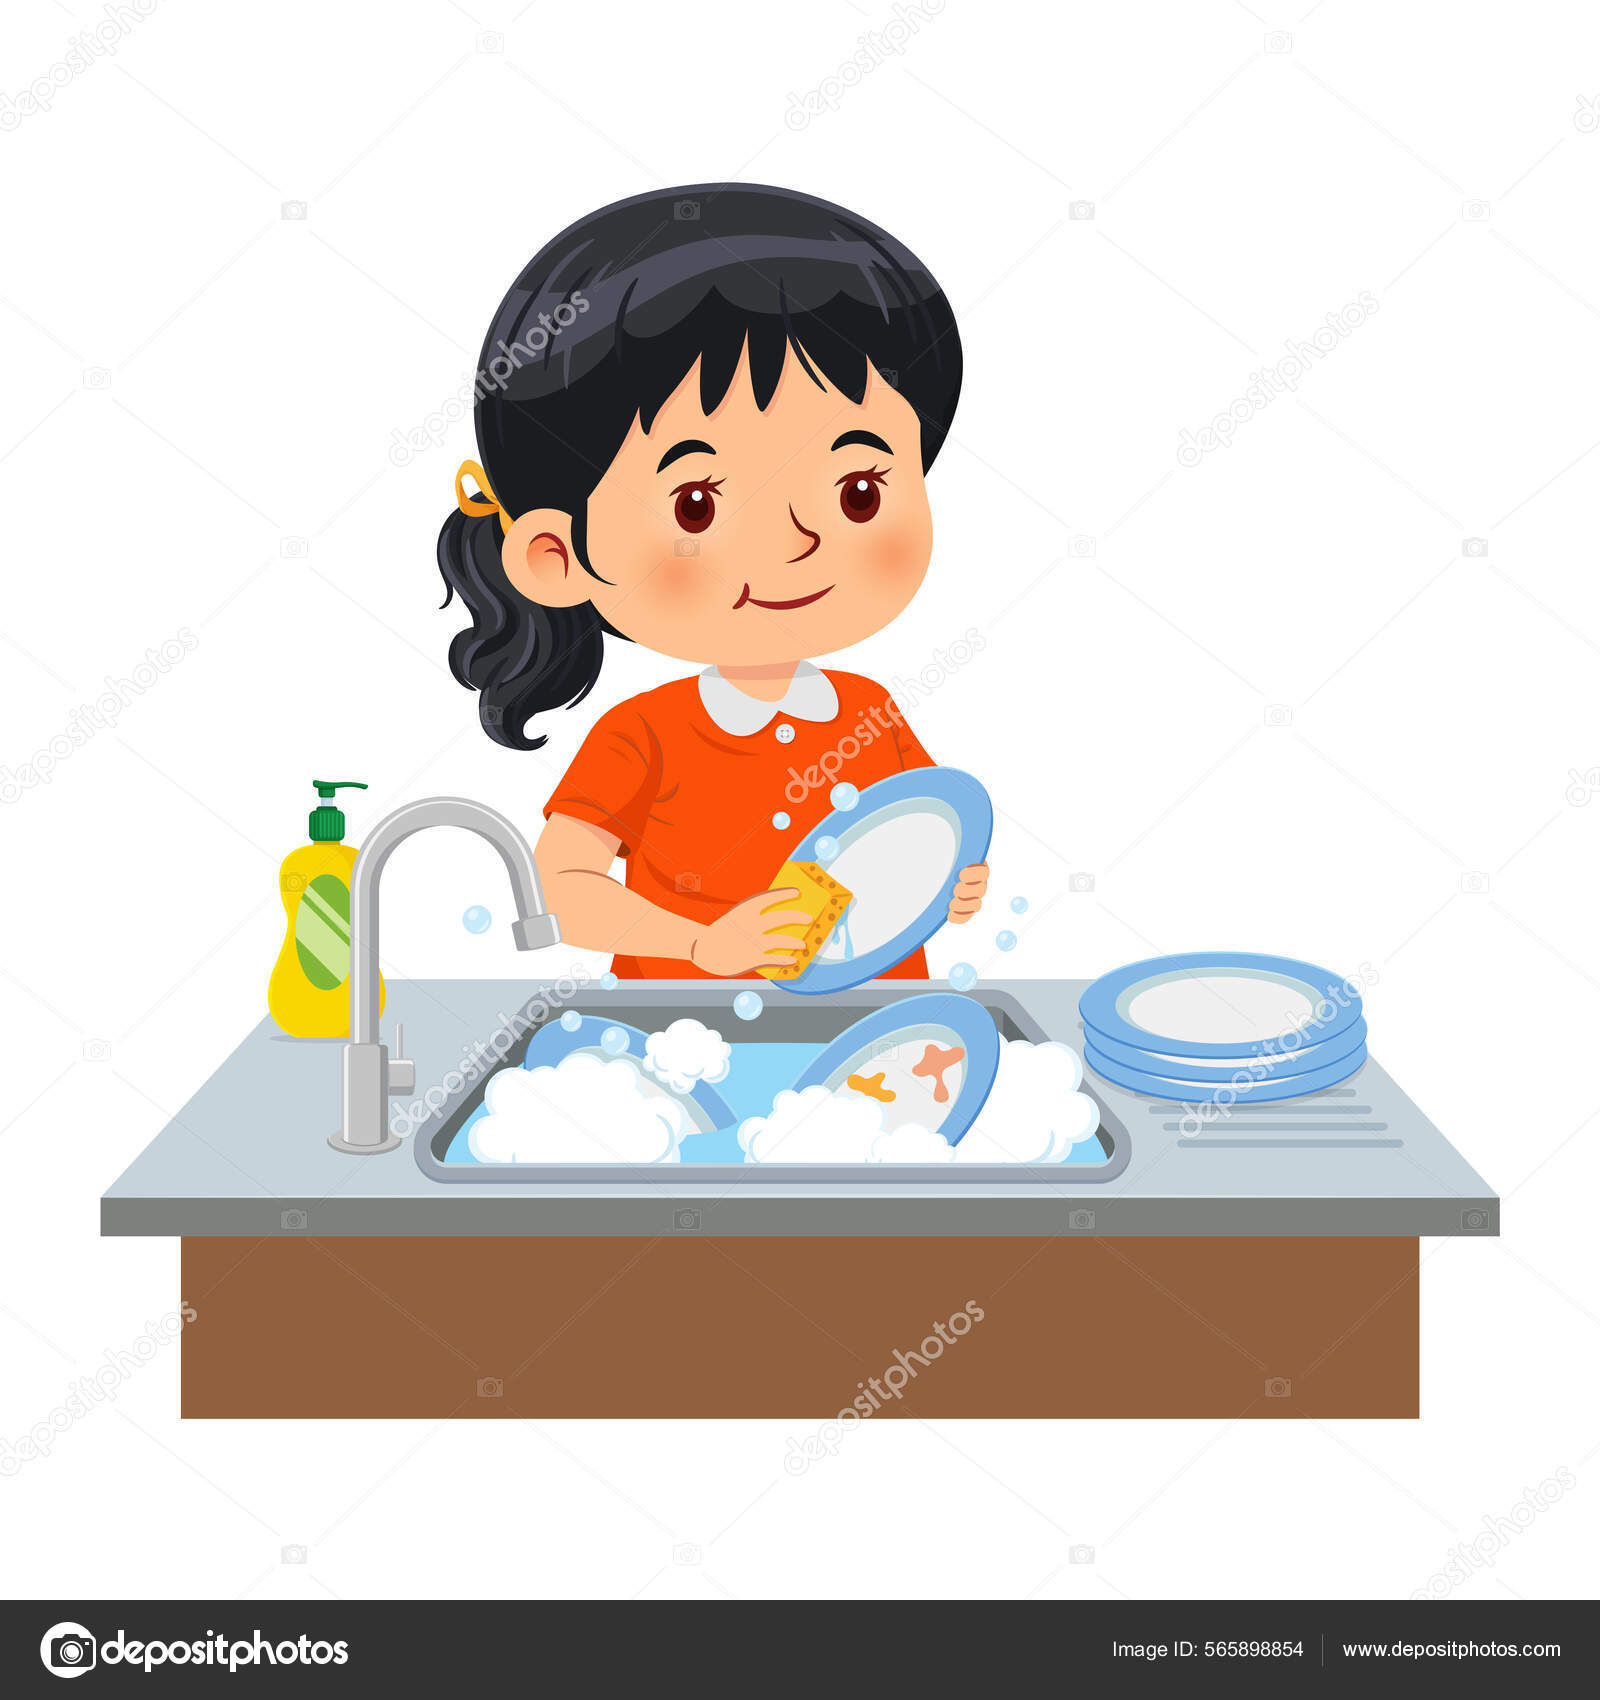 https://st.depositphotos.com/12188596/56589/v/1600/depositphotos_565898854-stock-illustration-little-girl-washing-dishes-kitchen.jpg